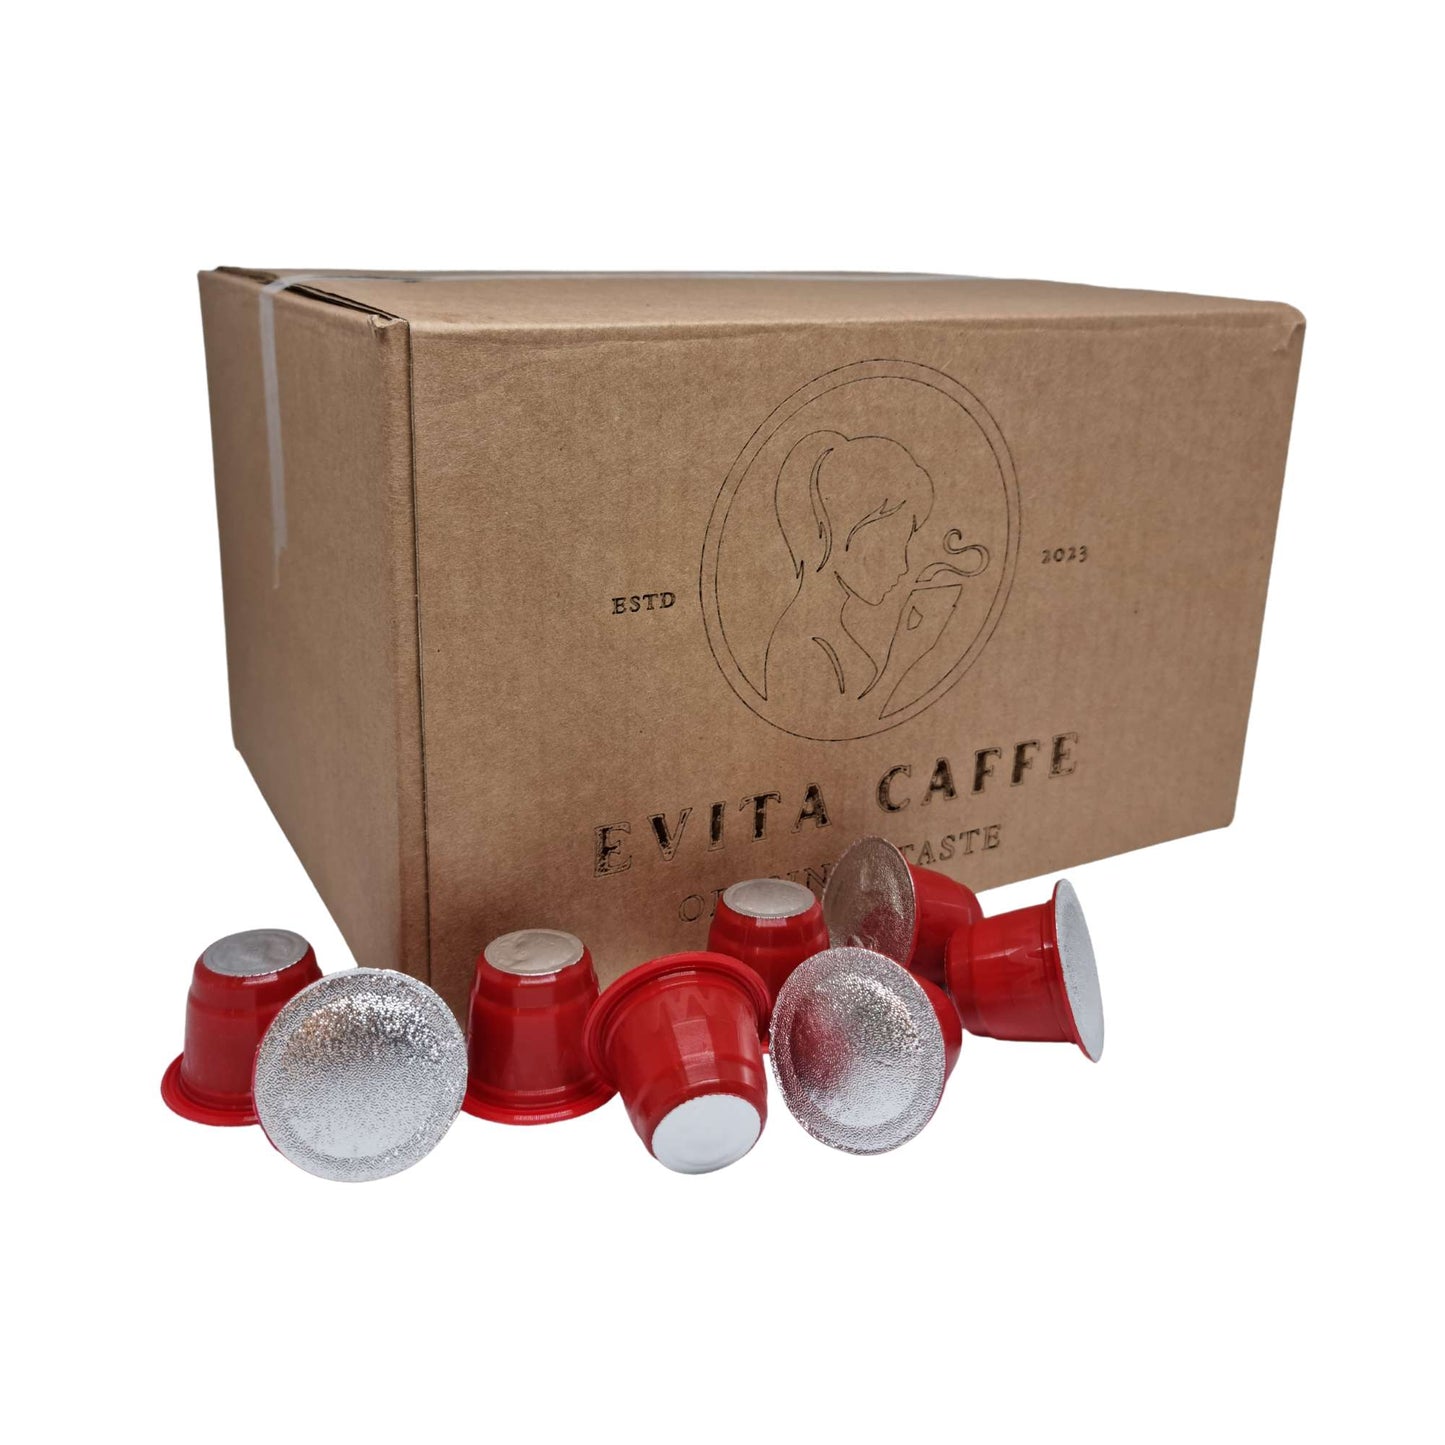 Evita Caffe Gold kapsule kompatibilne s Dolce Gusto aparatima